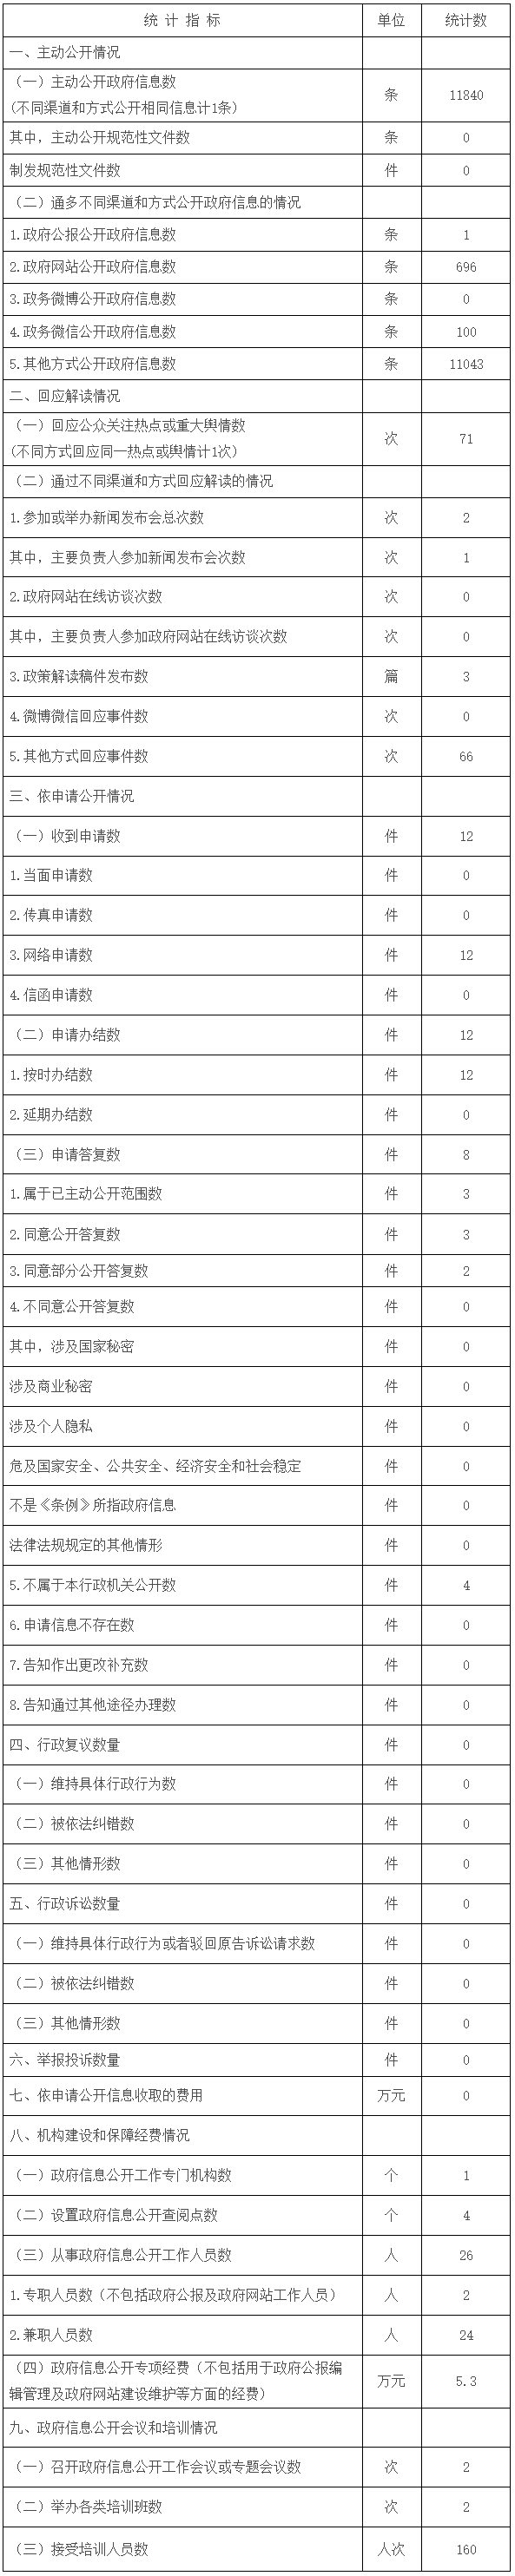 云南省统计局2018年政府信息公开工作年度报告.png